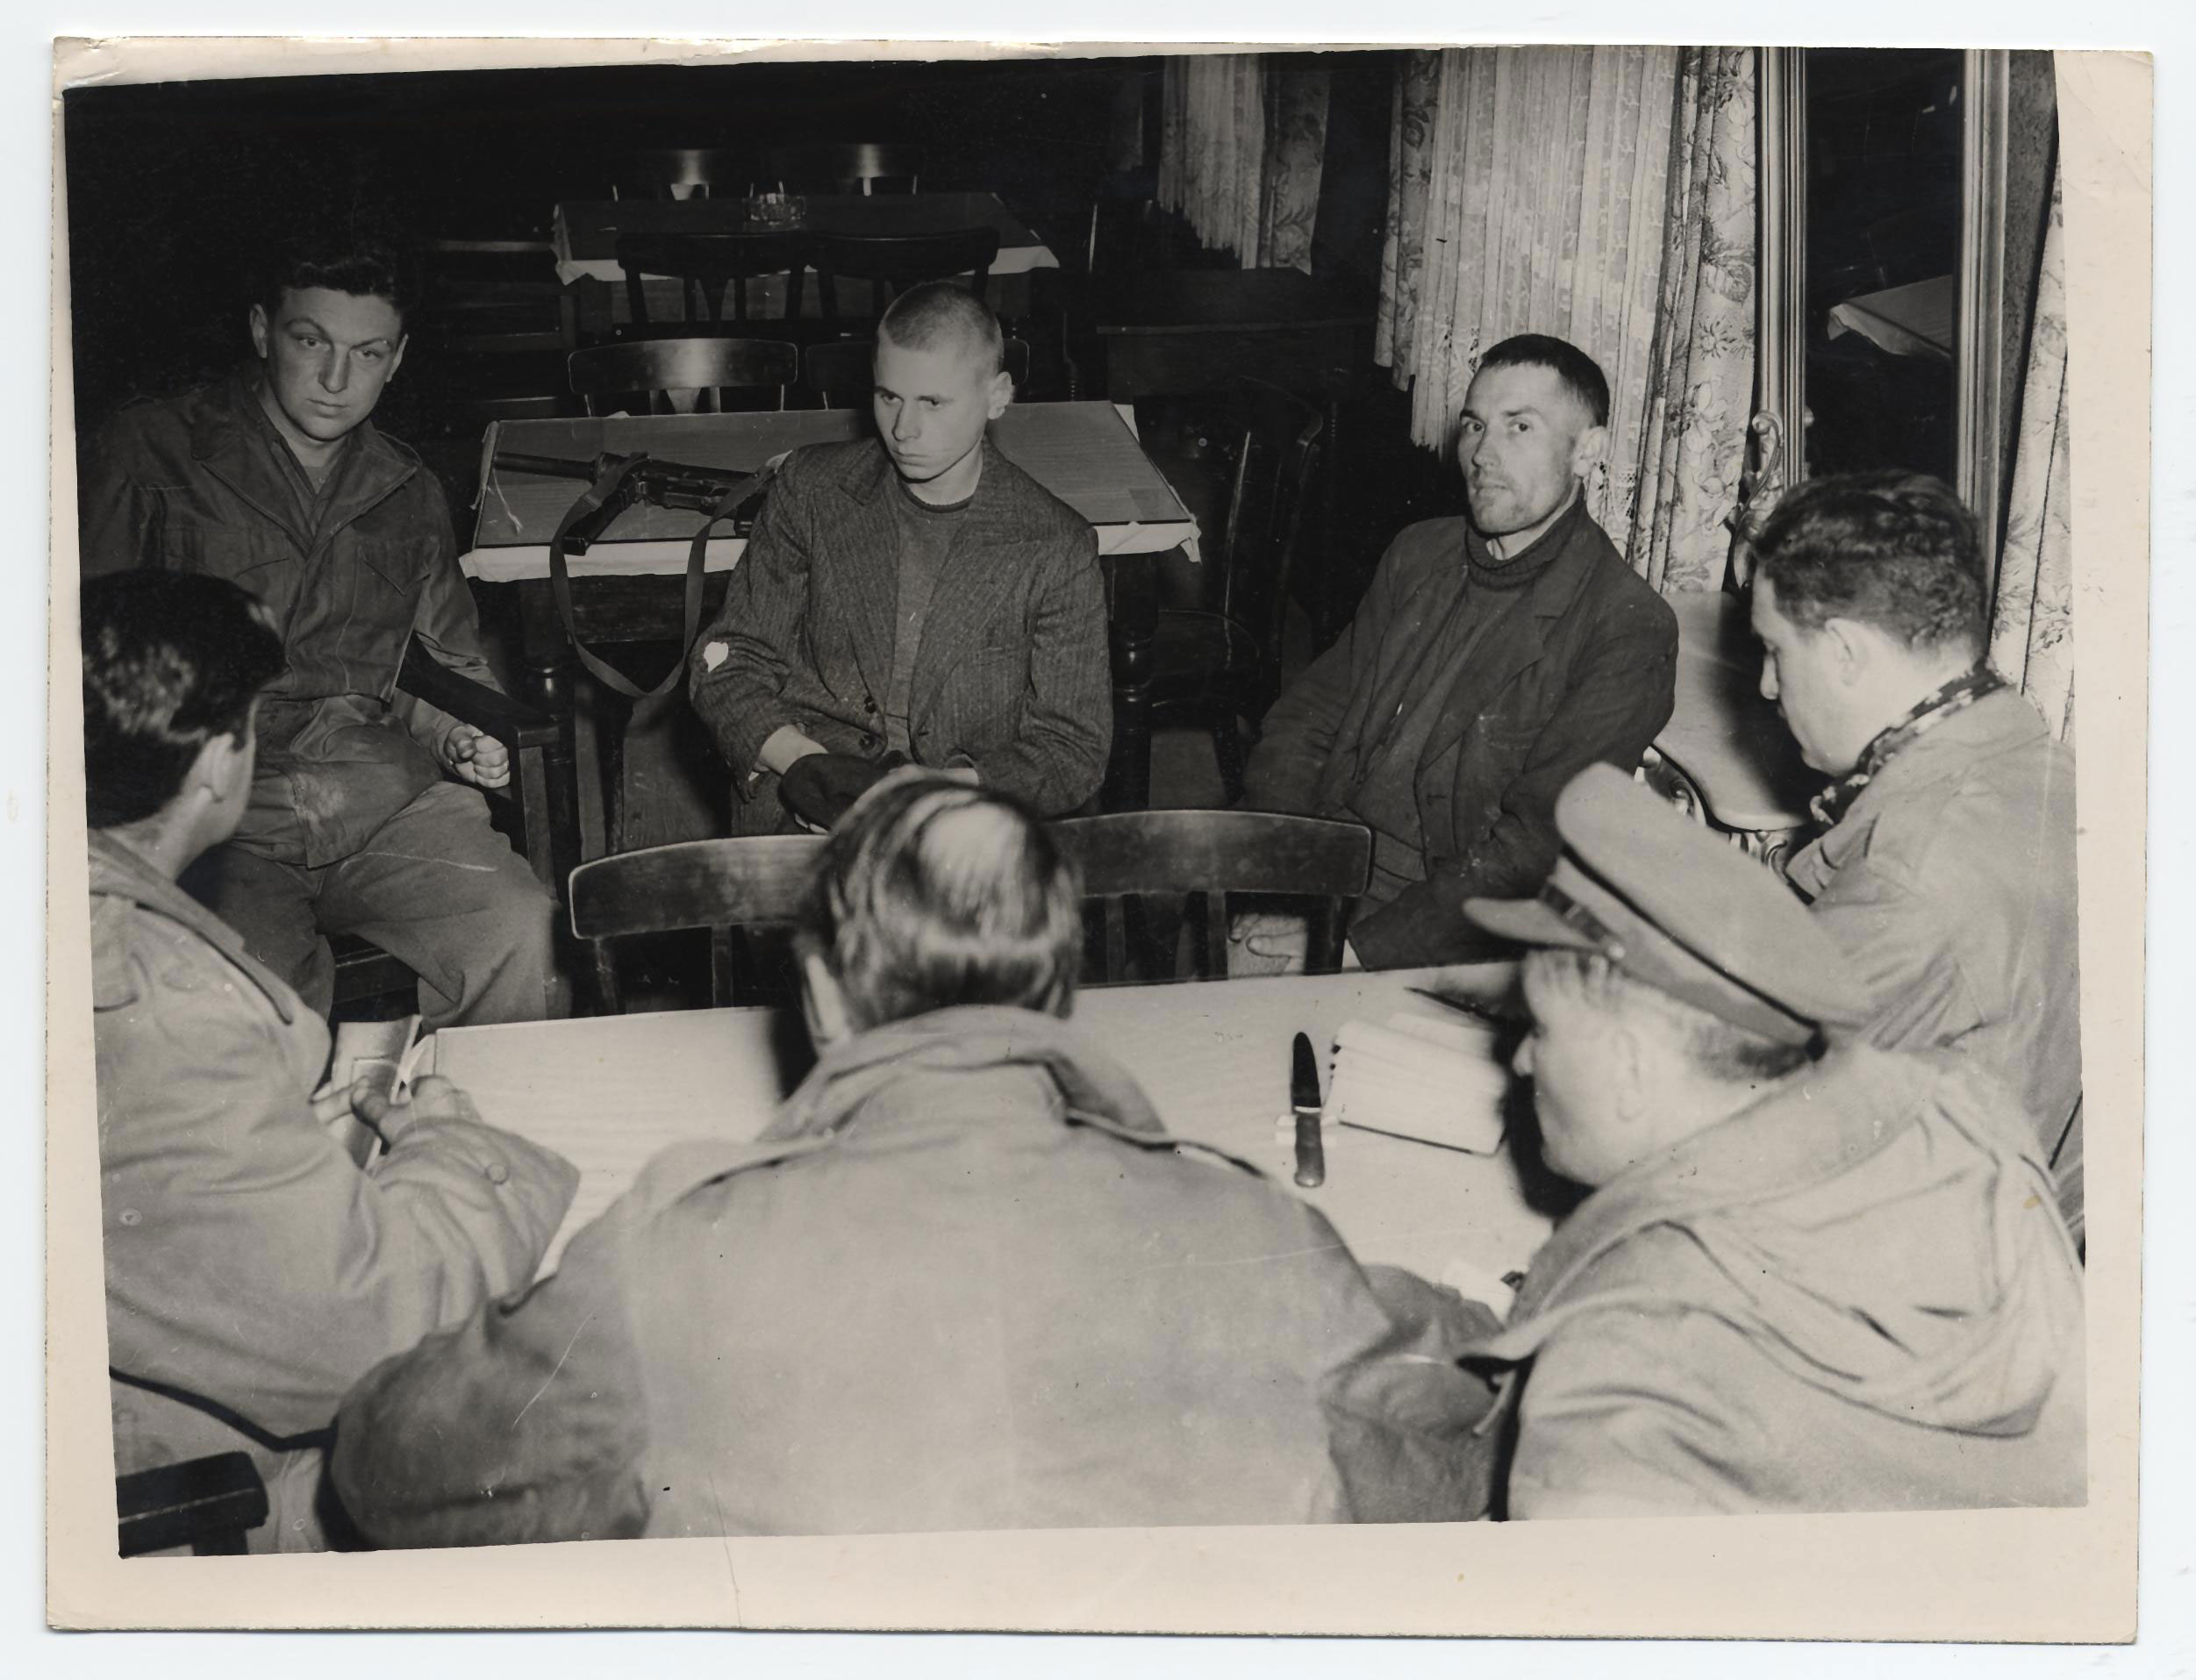 [Fotografie: Zwei Überlebende des Massakers an KZ-Häftlingen der Isenschnibber Feldscheune bei Gardelegen berichten von den Ereignissen, 1945]